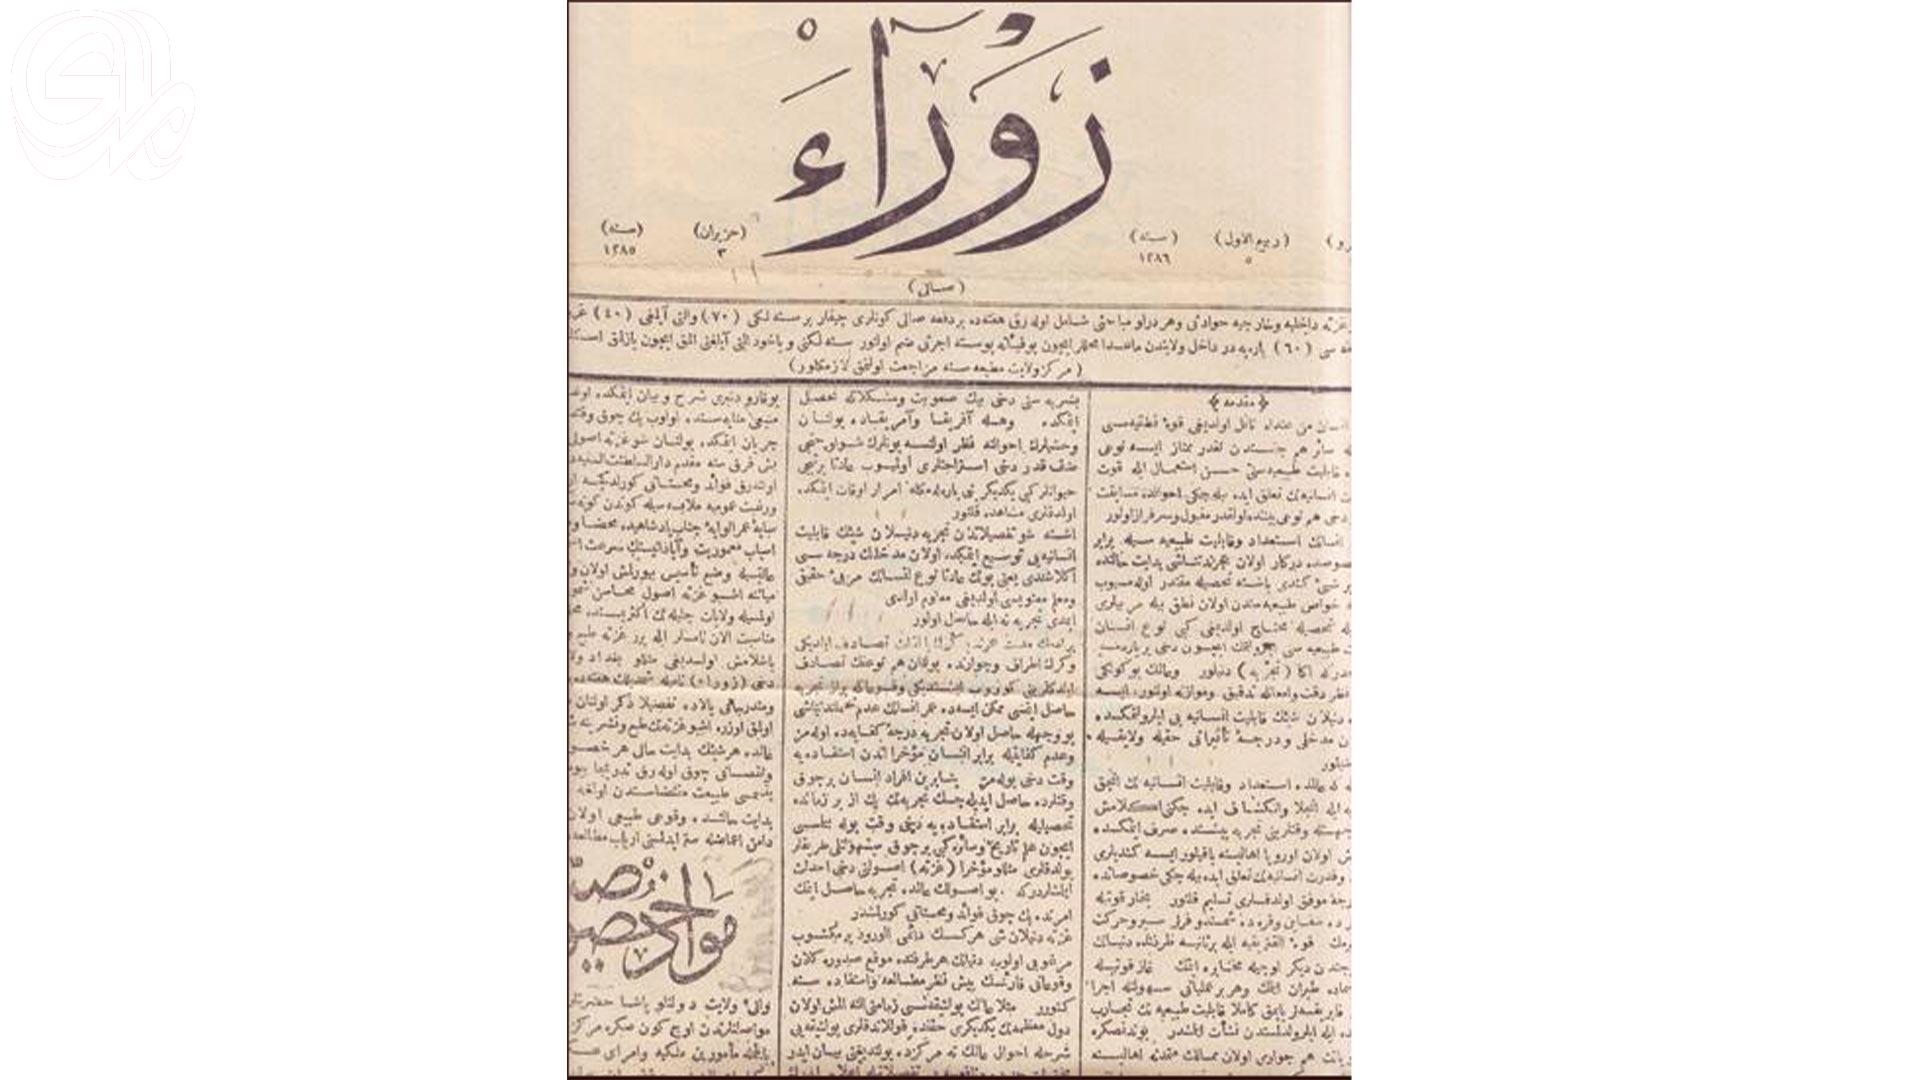 الزوراء الجريدة الأولى في تاريخ العراق..  بدايات وتطورات